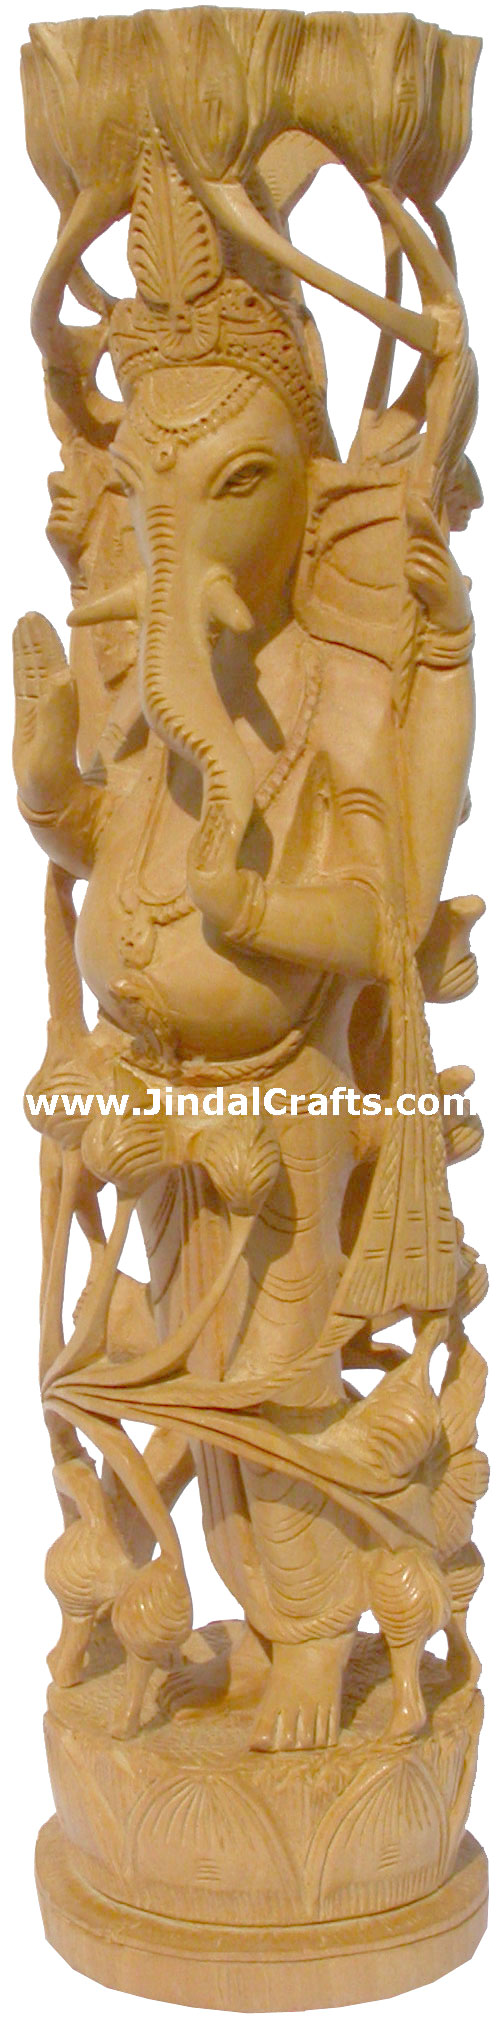 Wood Sculpture Lord Ganesha Figureine Hand Work India